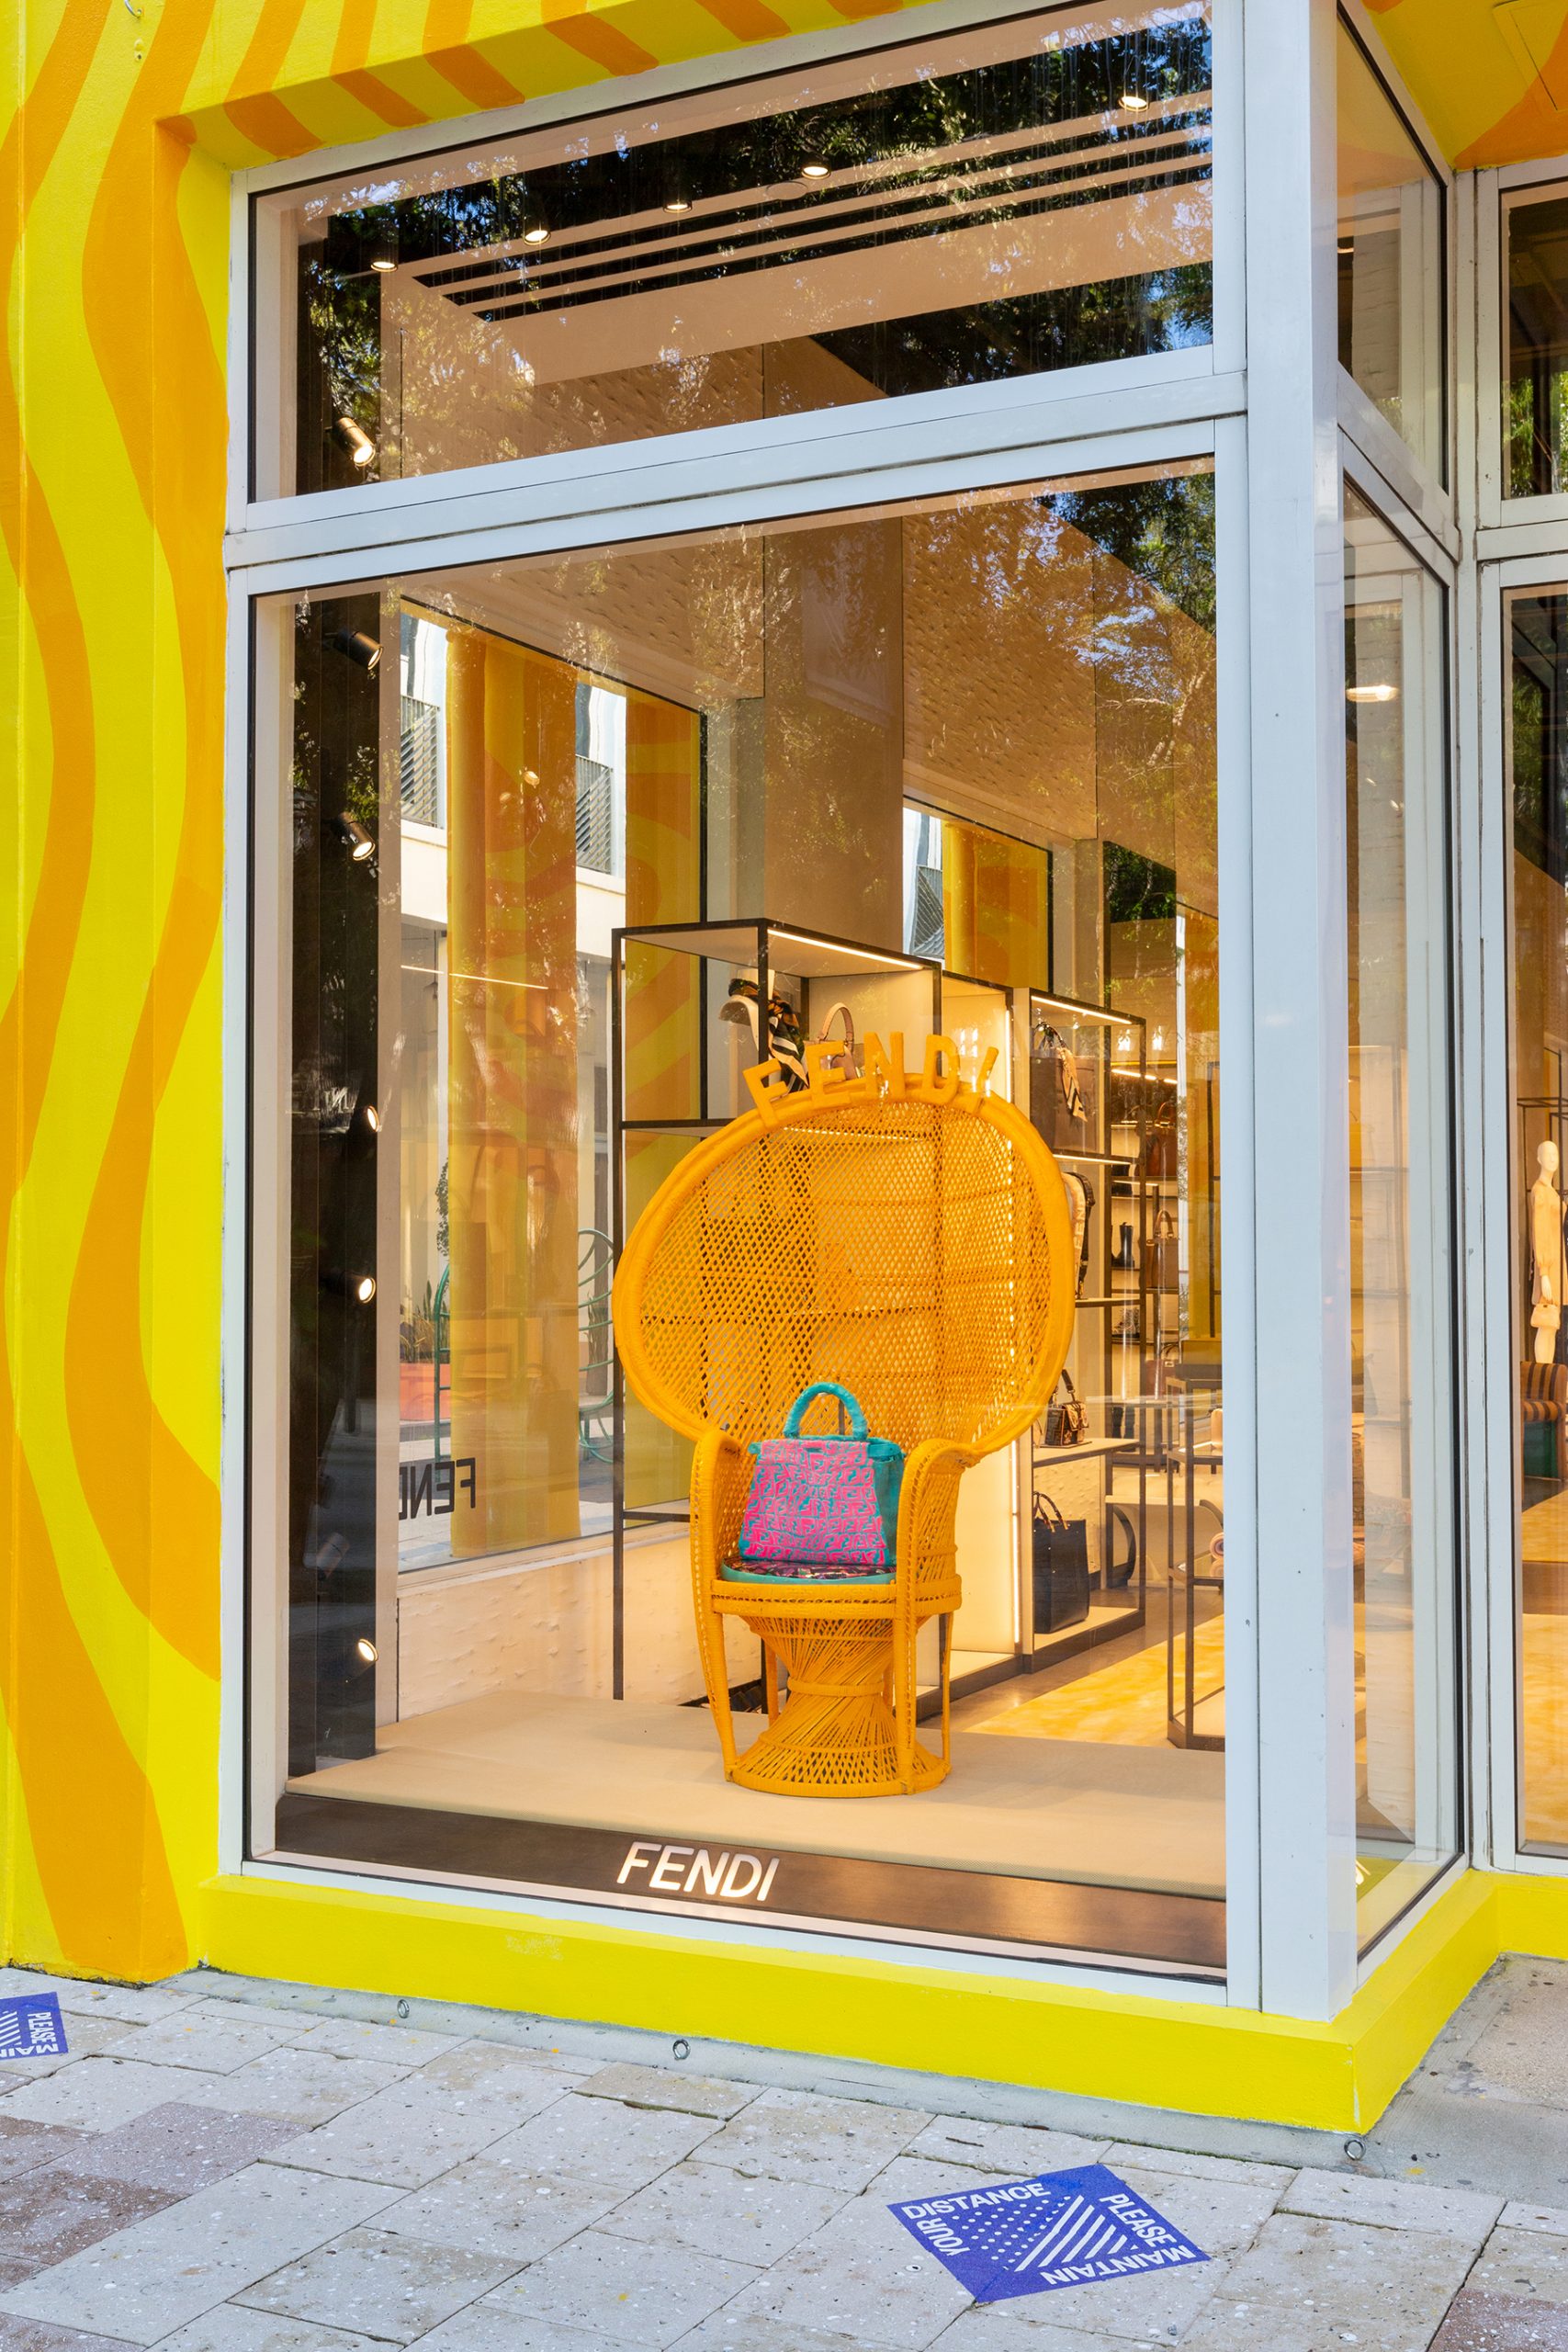 Fendi on X: Inside the new #Fendi boutique in the Miami Design